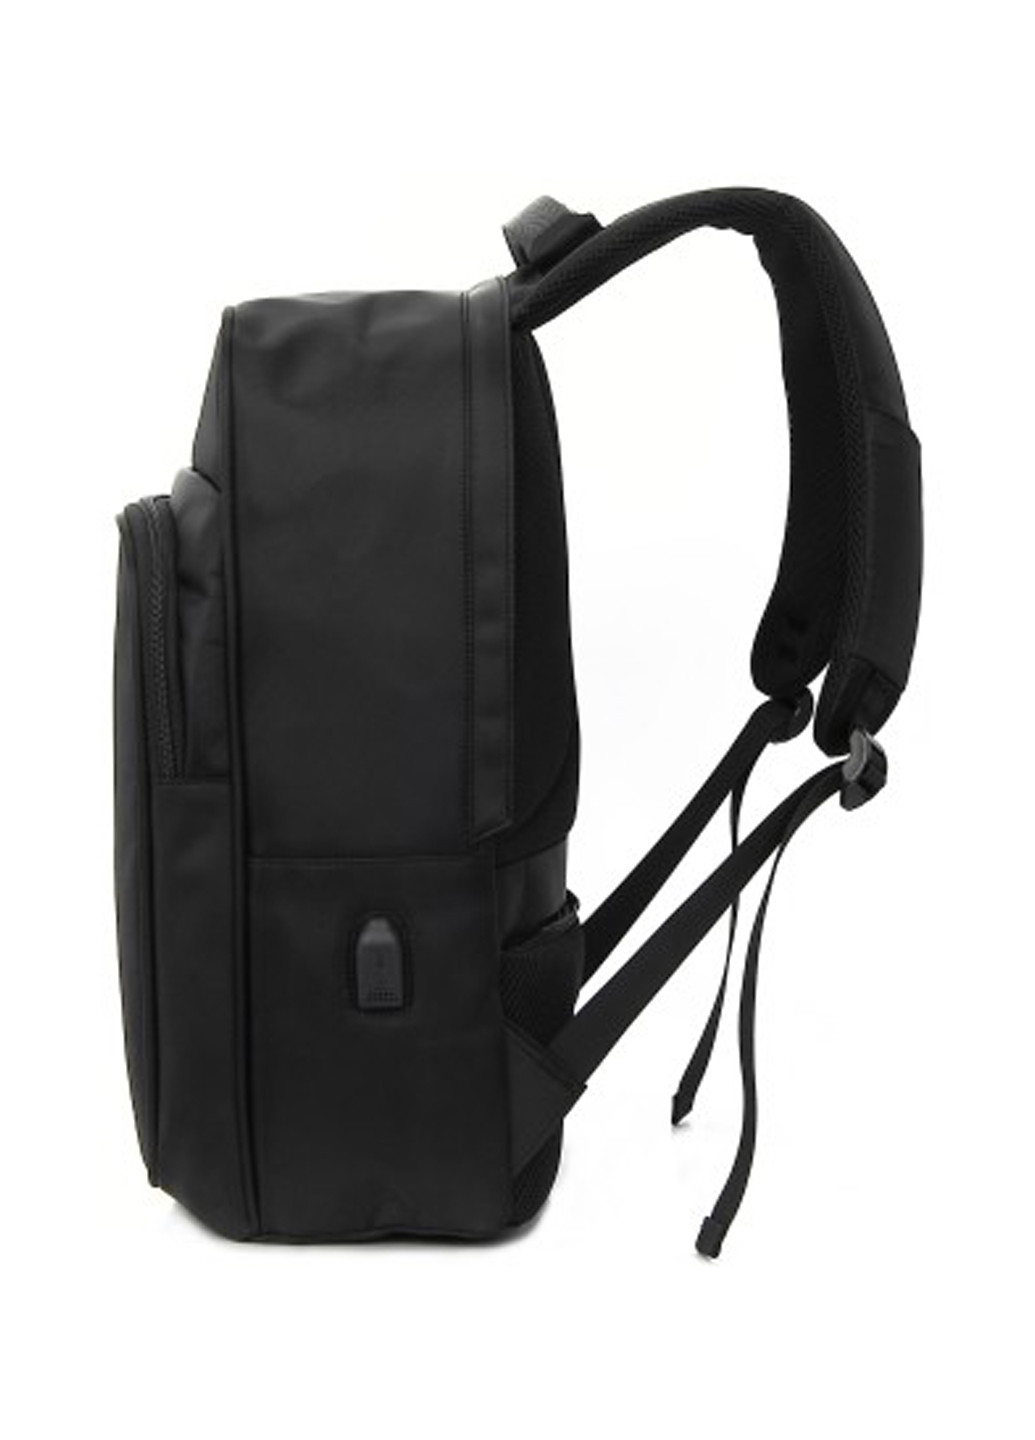 Рюкзак для ноутбука 15.6" DW-02 anti-theft black (378538) DEF для ноутбука def 15.6" dw-02 anti-theft black (138727468)